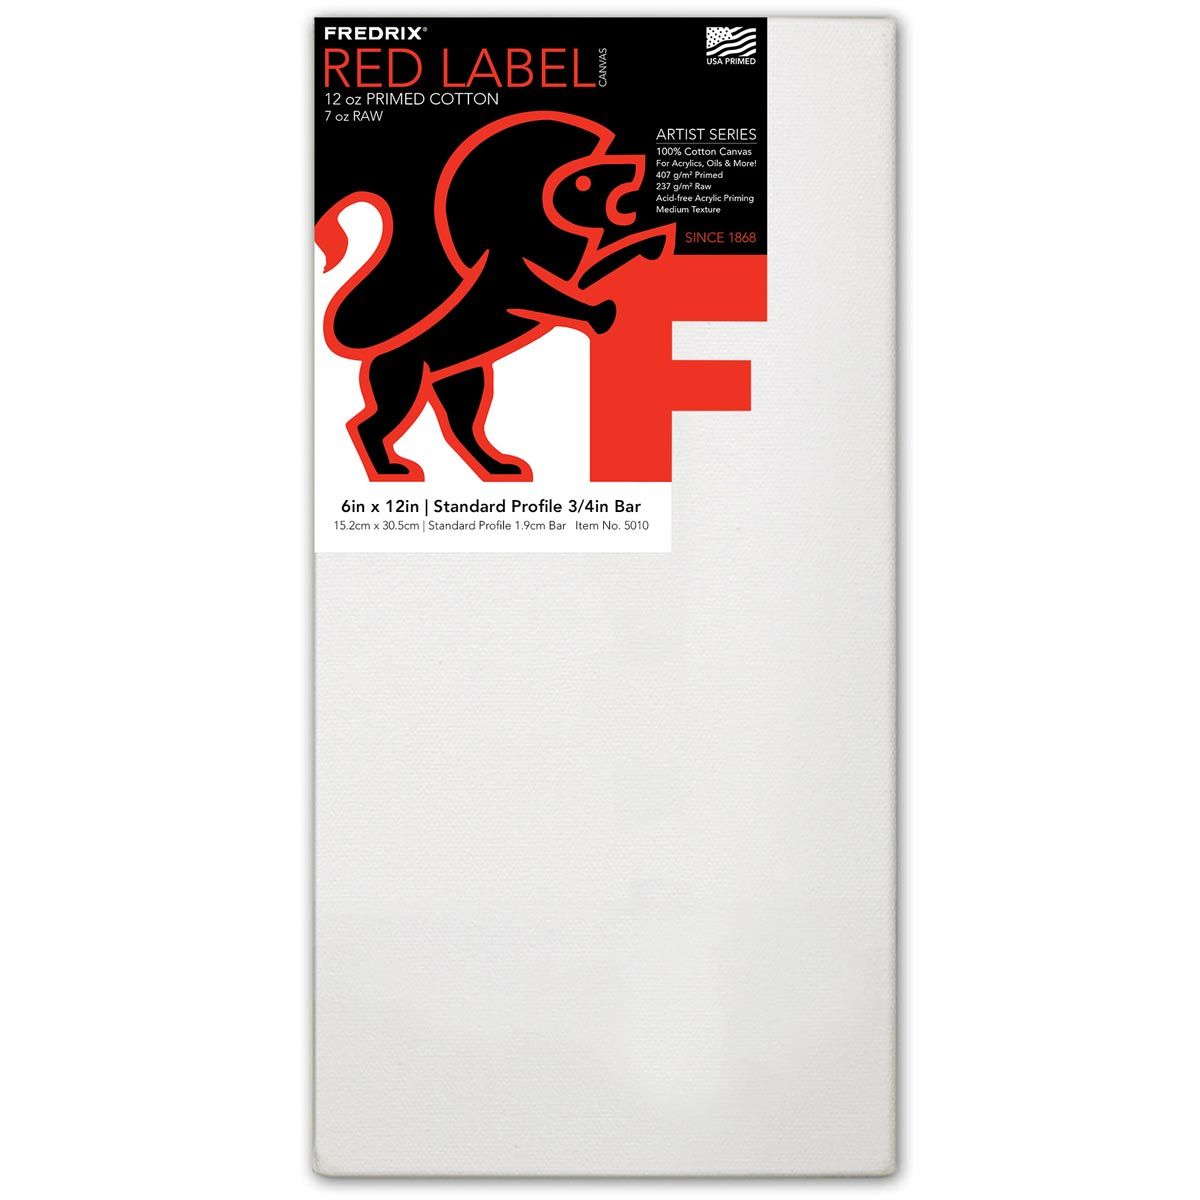 Fredrix Red Label 3/4" Profile Cotton Canvas 6" x 12"